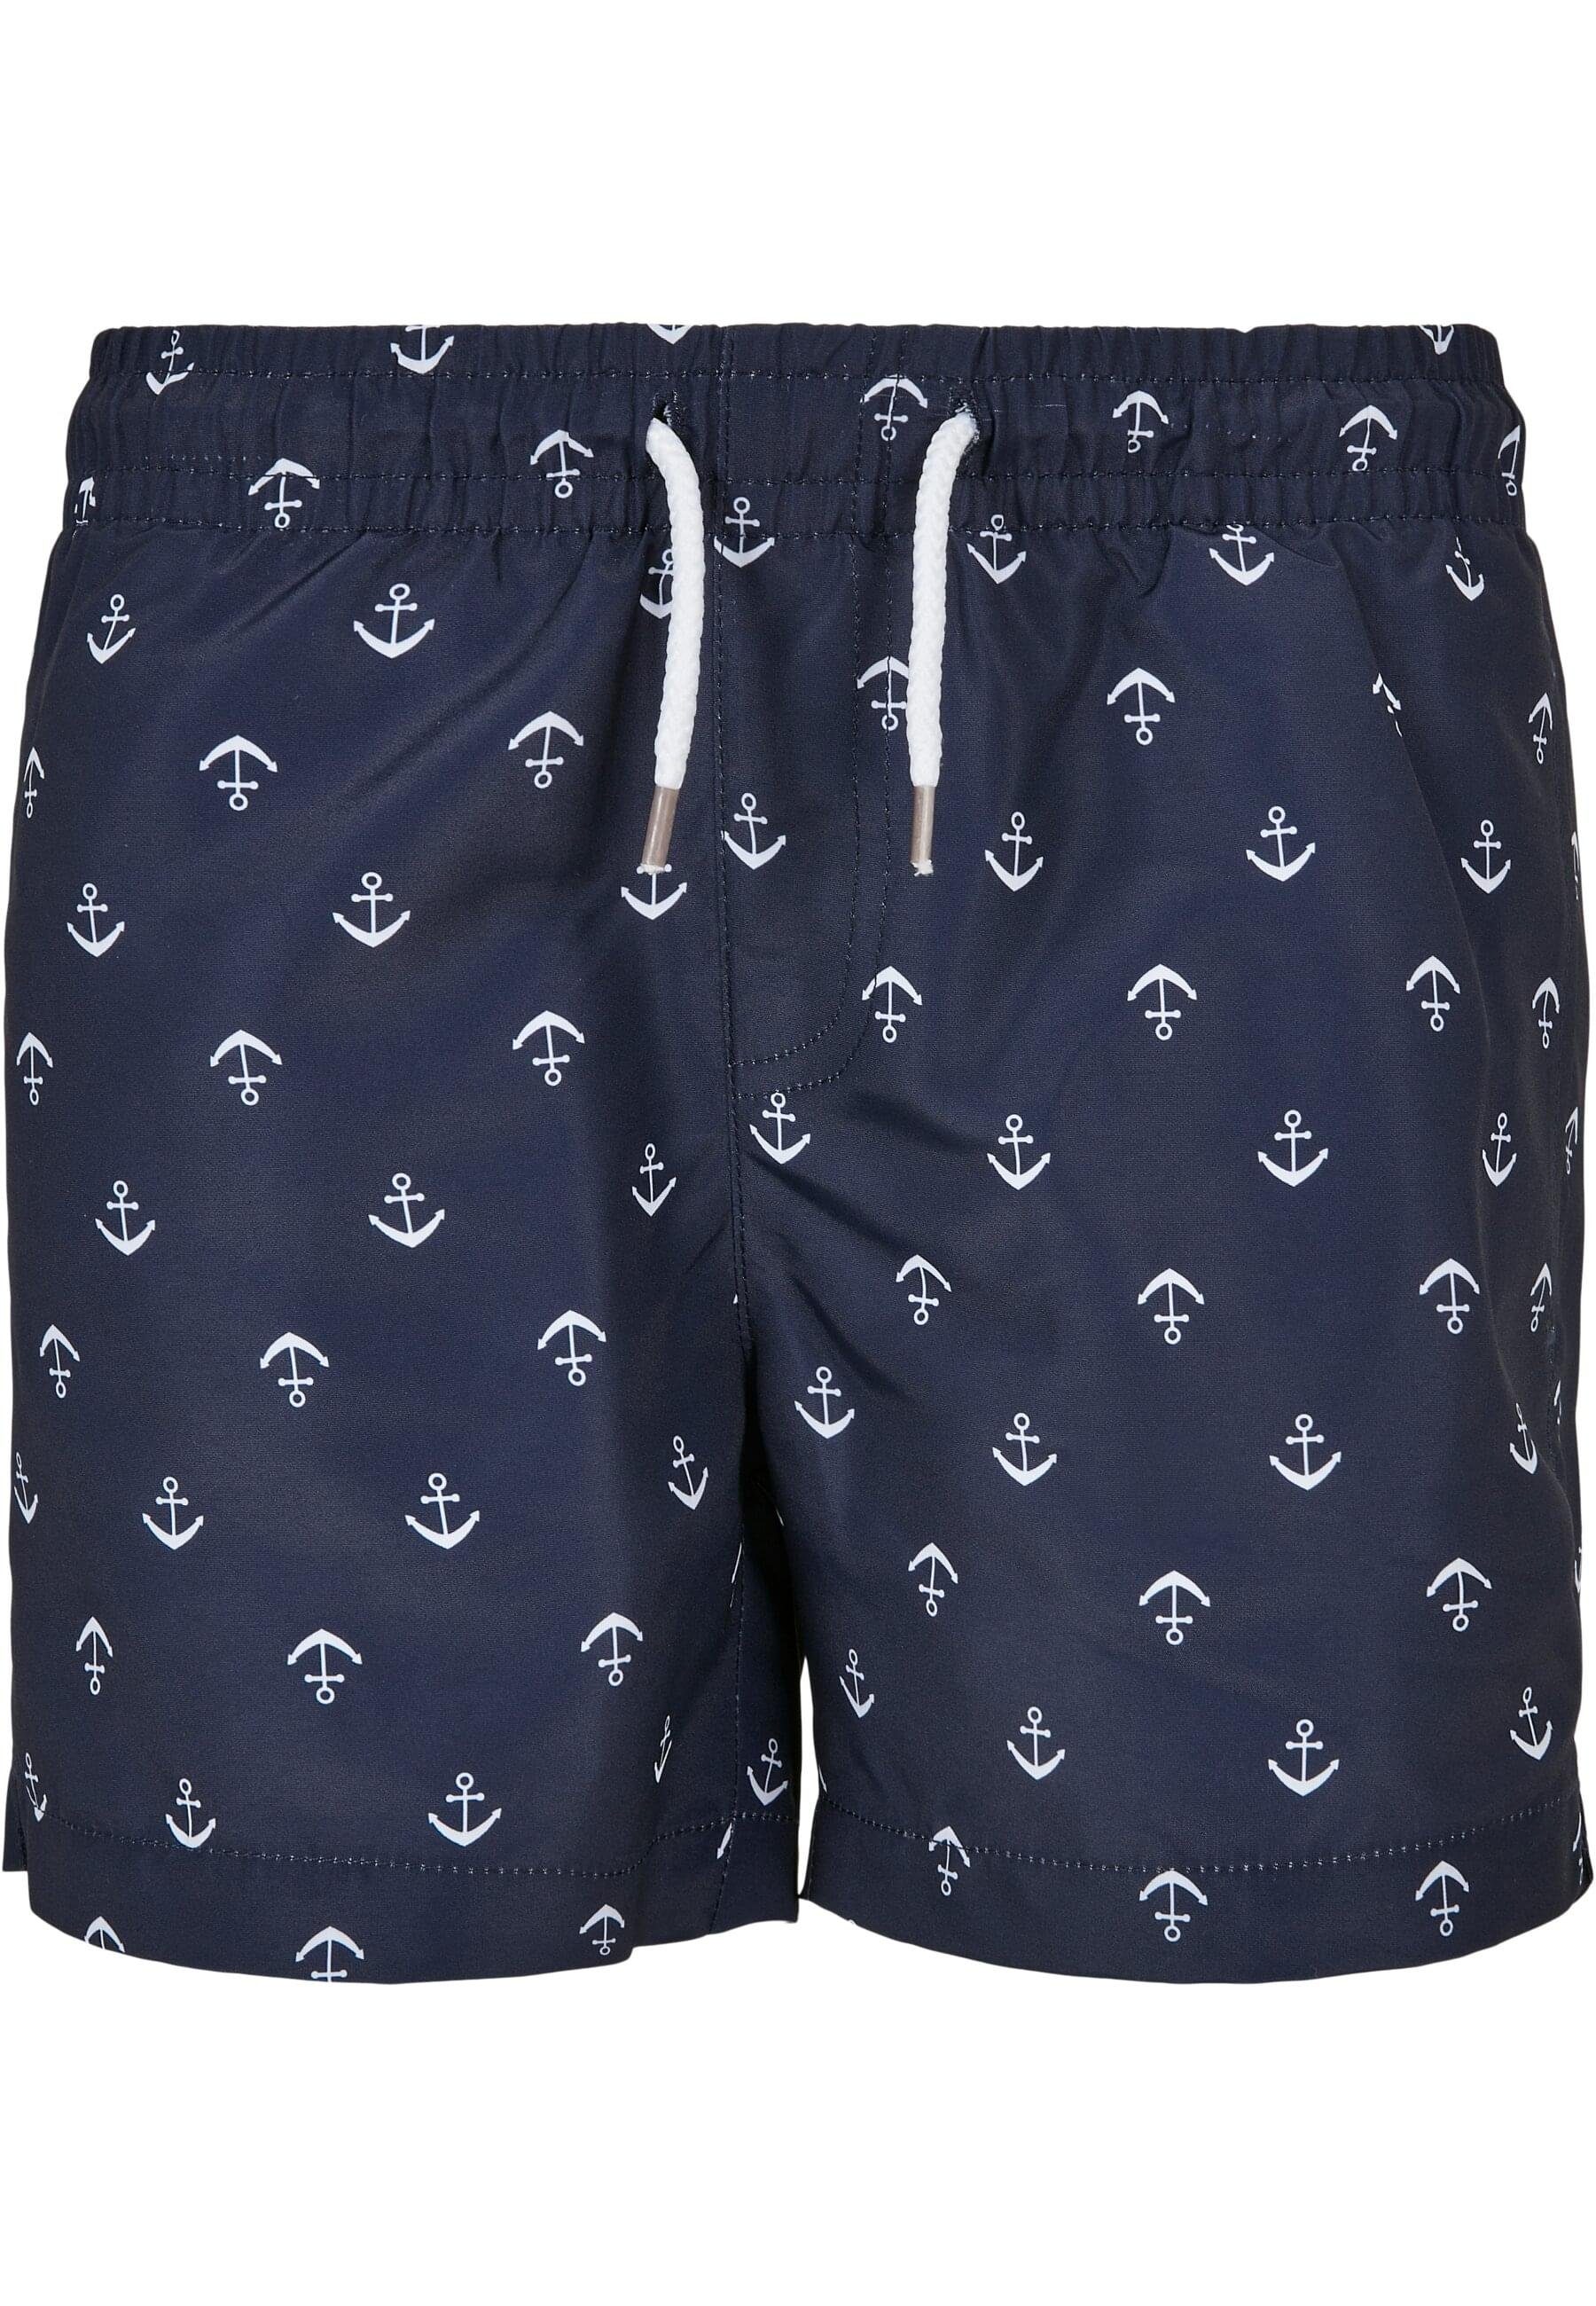 URBAN CLASSICS Shorts Swim Badeshorts anchor/navy Boys Herren Pattern